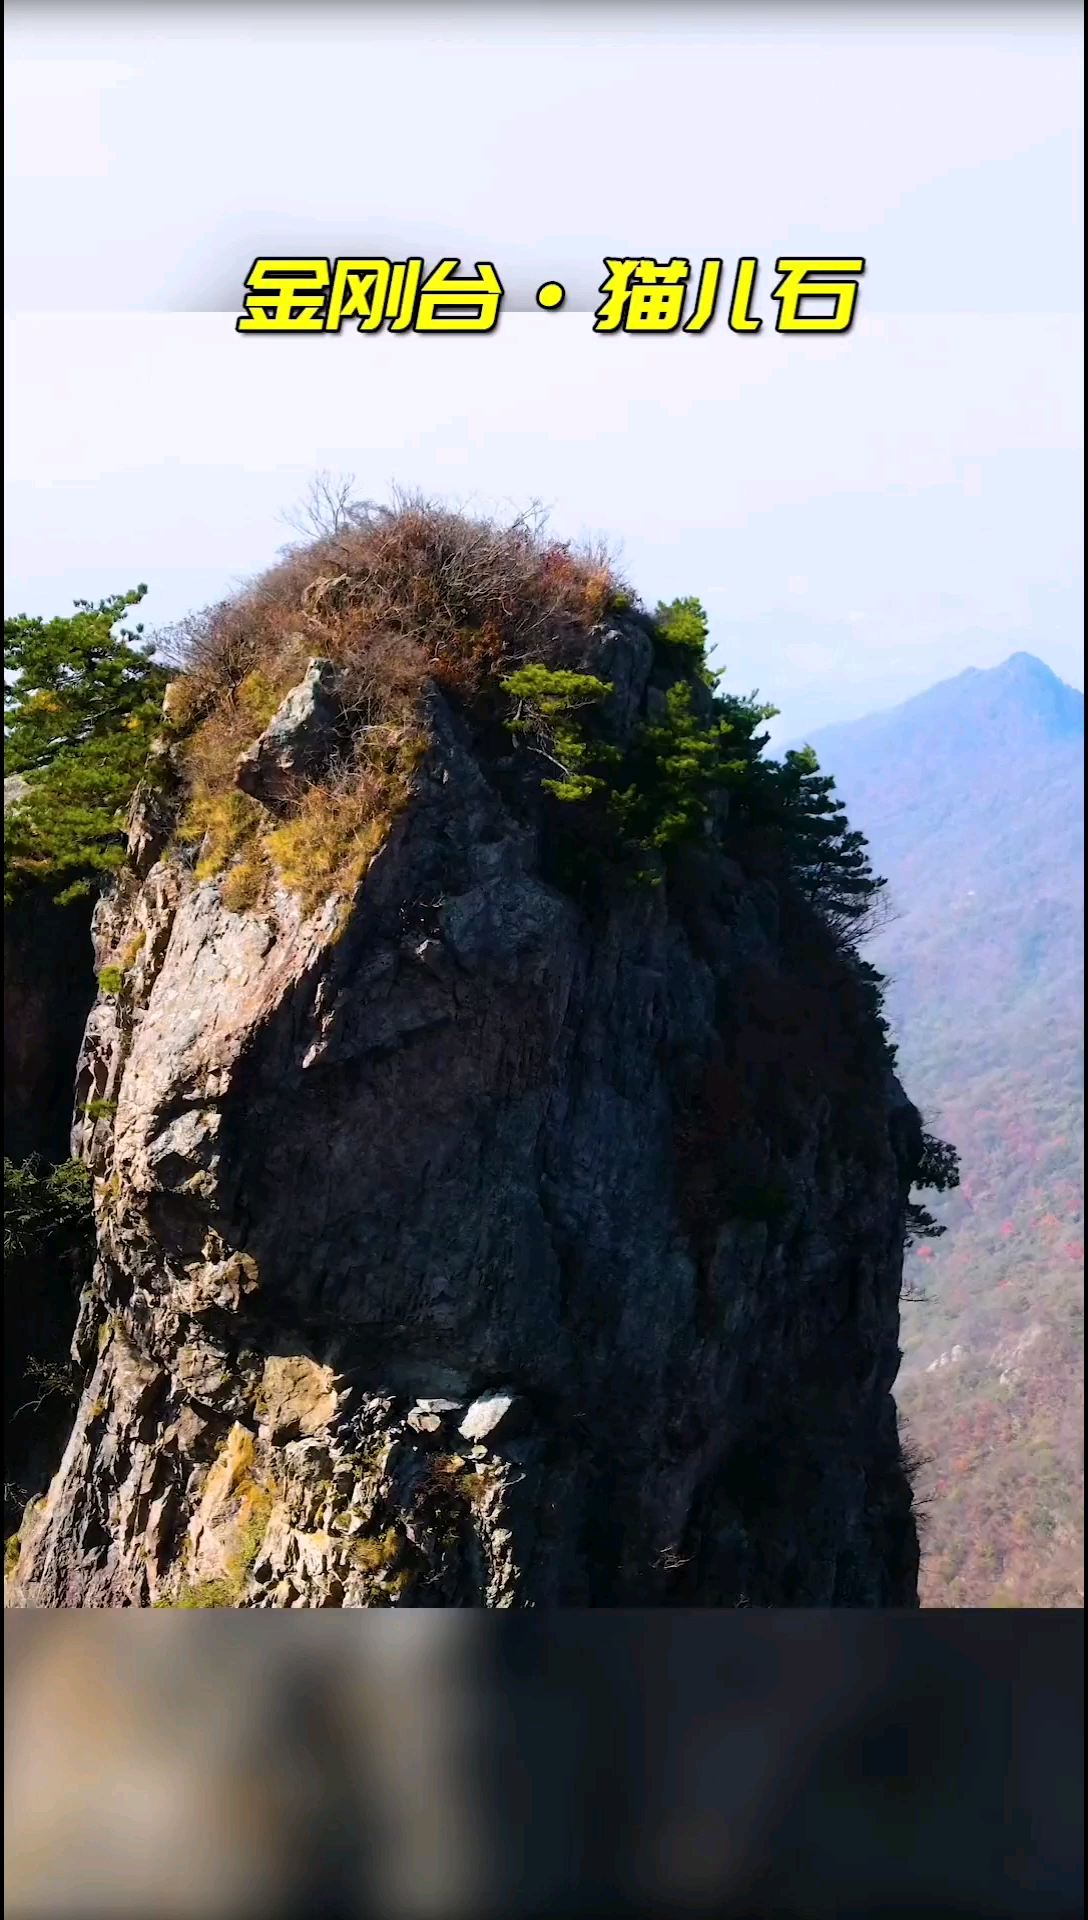 猫儿石，位于大别山在河南境内的最高峰金刚台，海拔1351米，石高50米，站在猫儿峰对面猫盏石上，无限